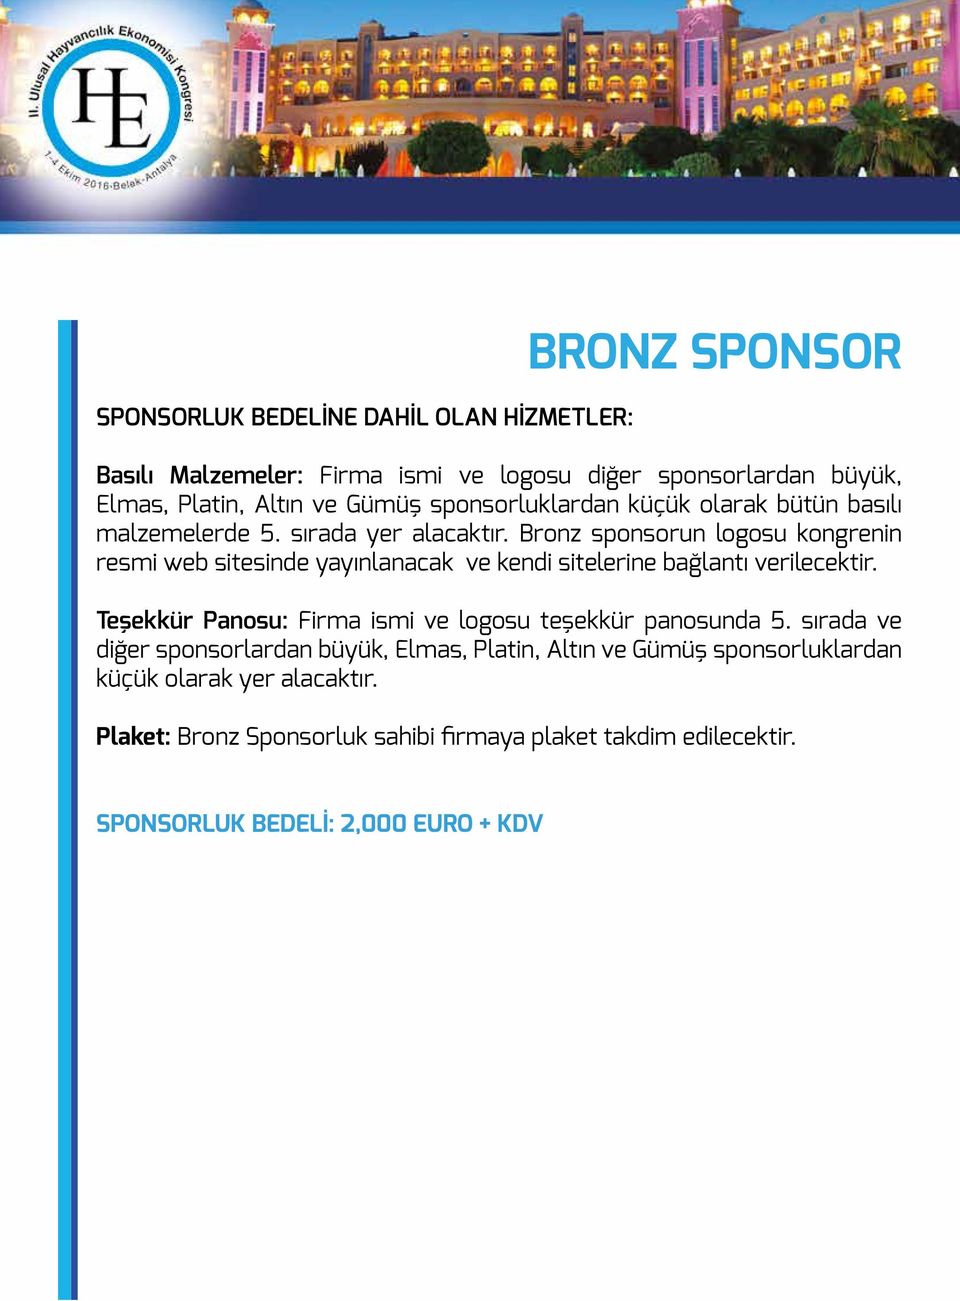 Bronz sponsorun logosu kongrenin resmi web sitesinde yayınlanacak ve kendi sitelerine bağlantı verilecektir.